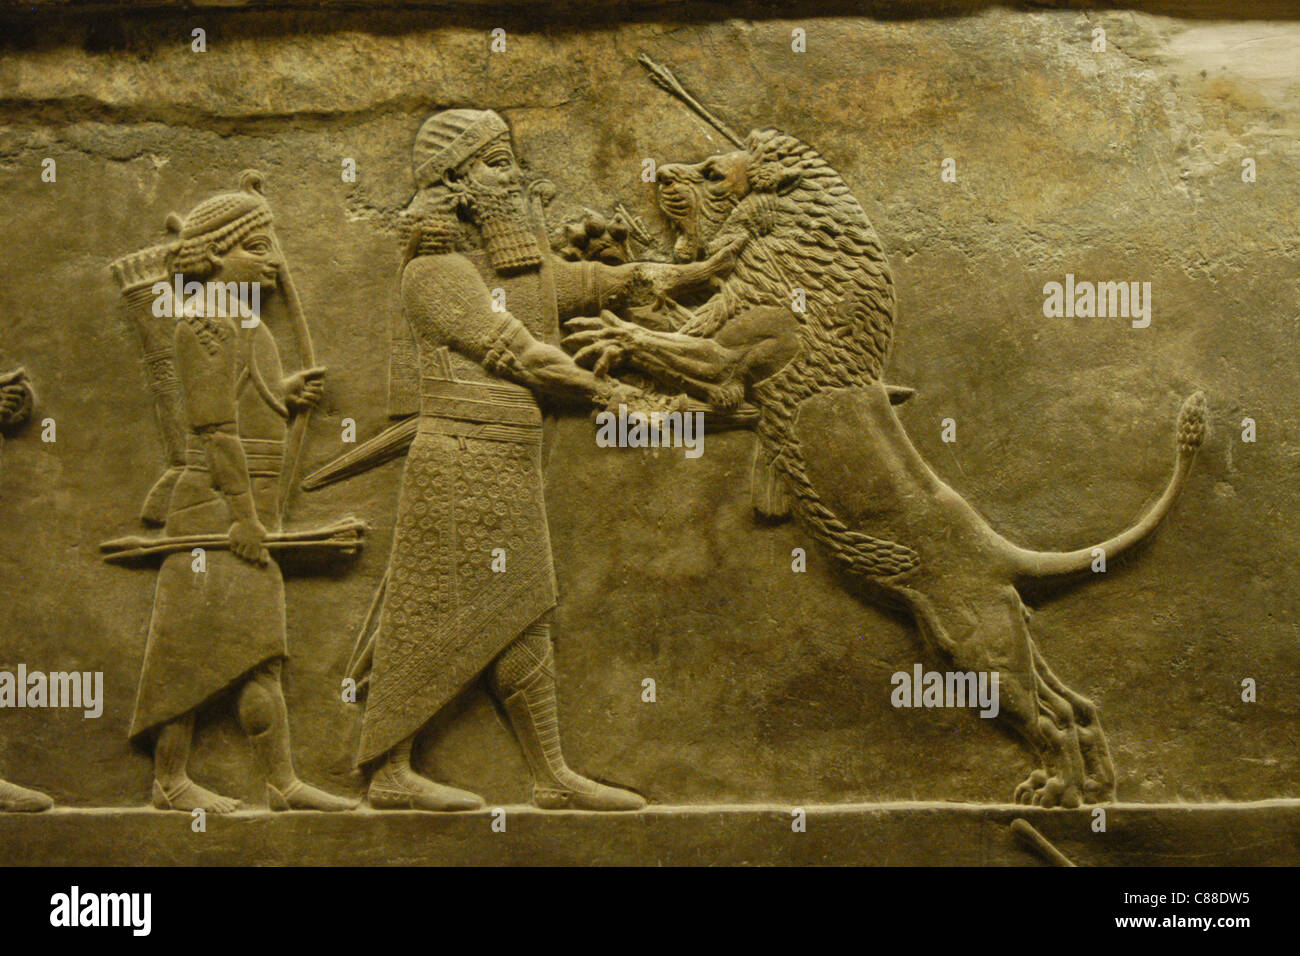 Assyrische Reliefs des königlichen Löwen jagen des Königs Ashurbanipal gesehen im British Museum in London, England, UK. Stockfoto